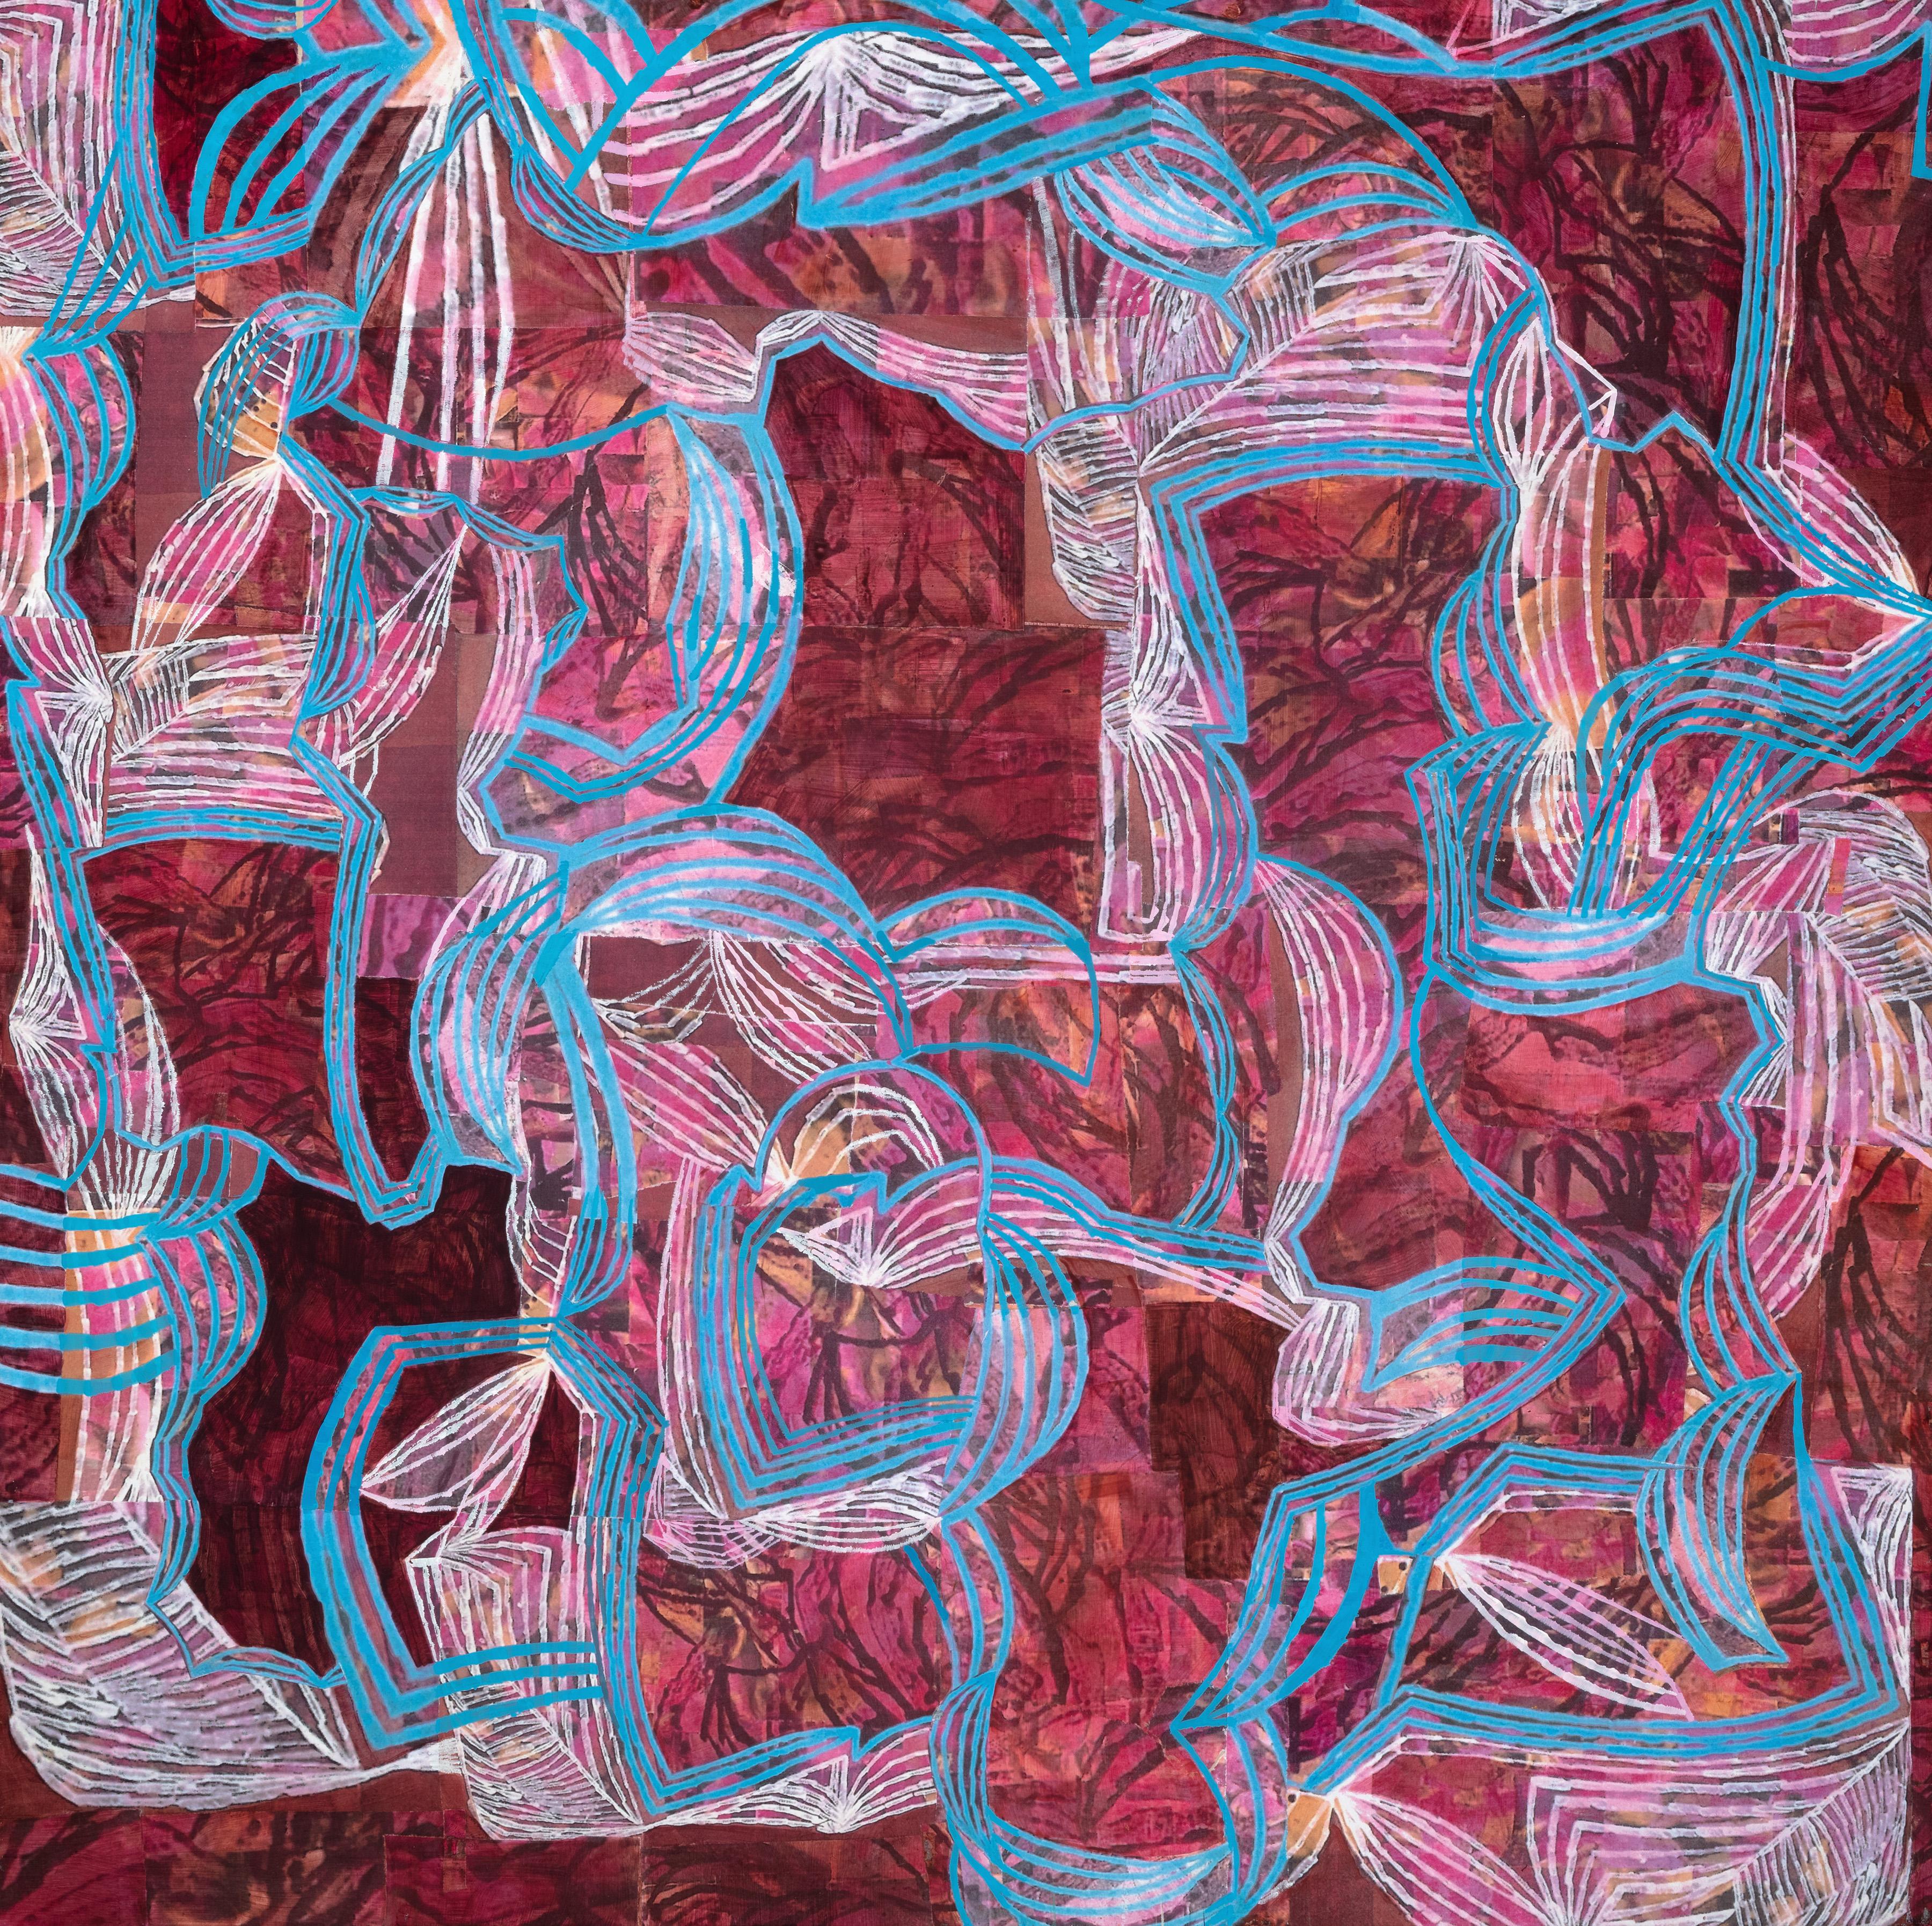 Netting Fete - Painting by Aimée Farnet Siegel